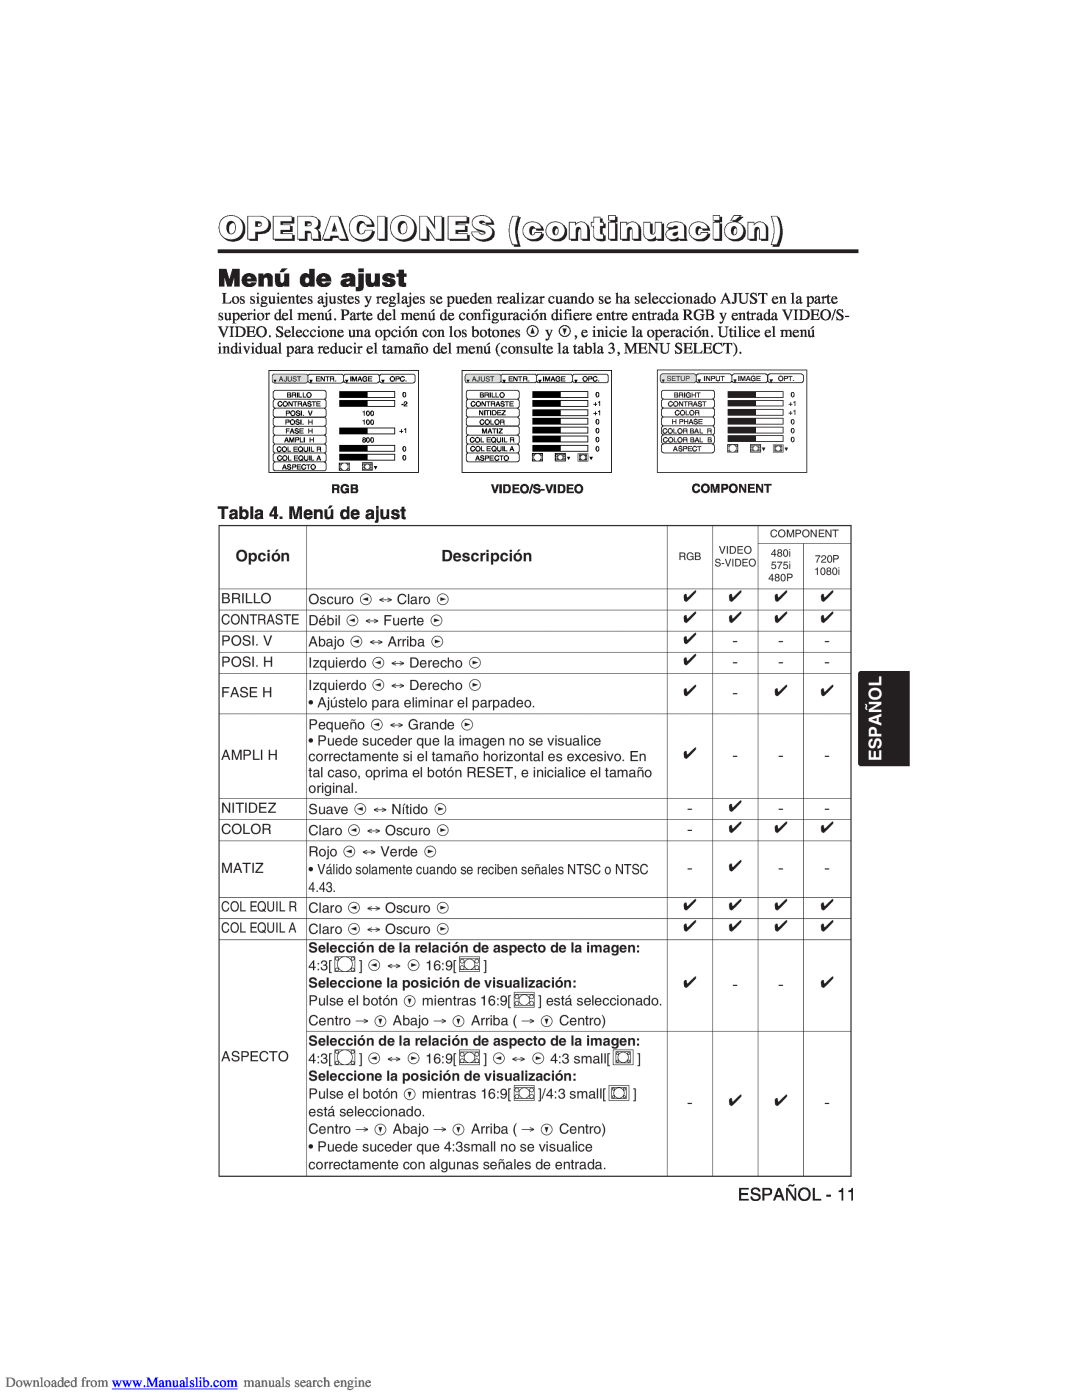 Hitachi CP-X275W user manual Tabla 4. Menú de ajust, OPERACIONES continuación, Español 